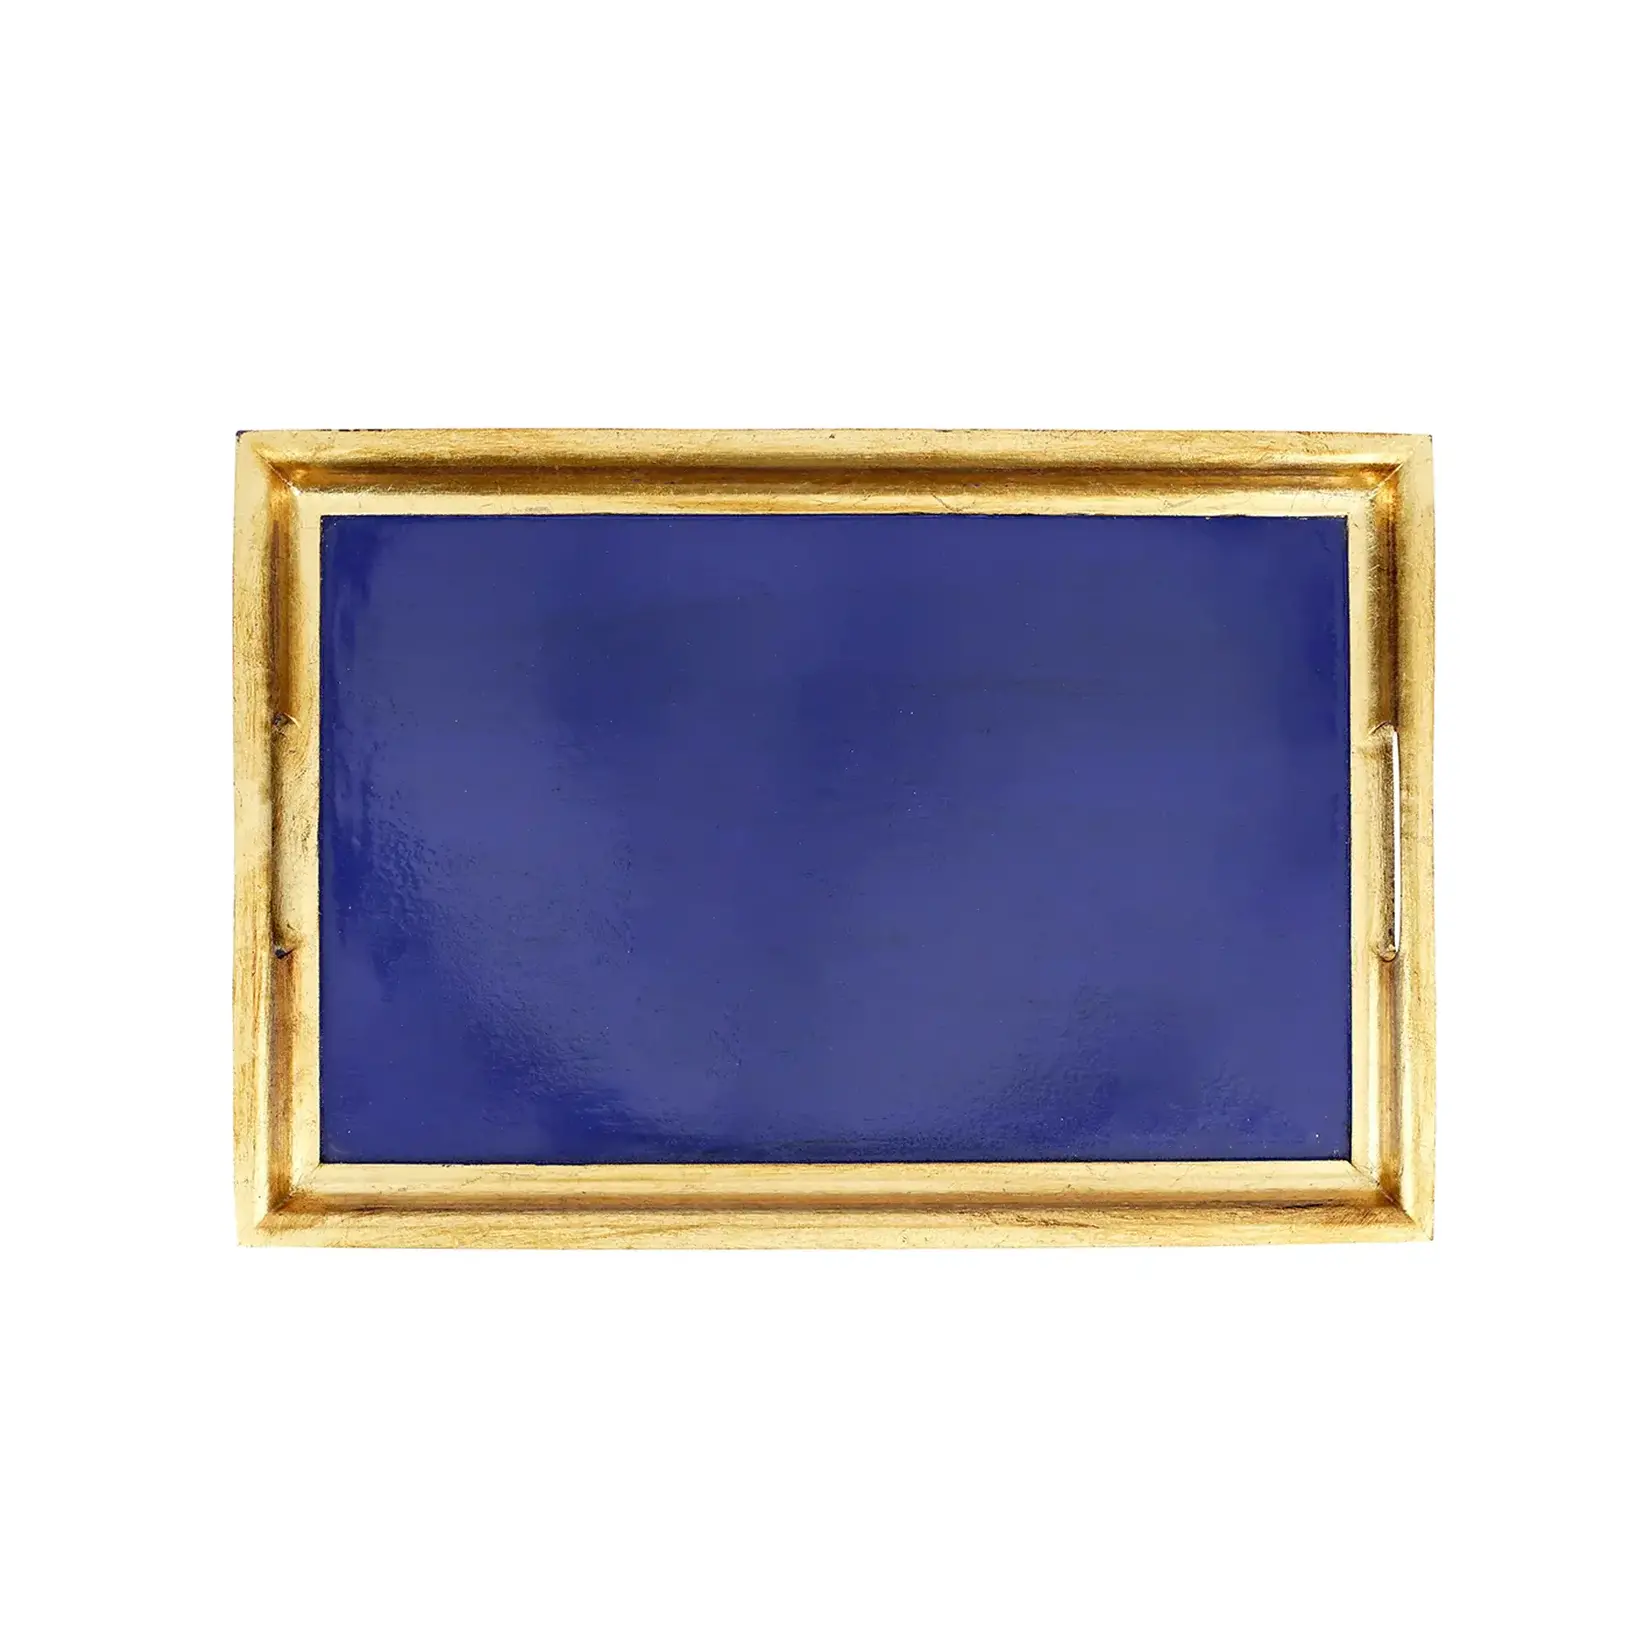 Vietri Florentine Wooden Accessories Cobalt & Gold Medium Rectangular Tray